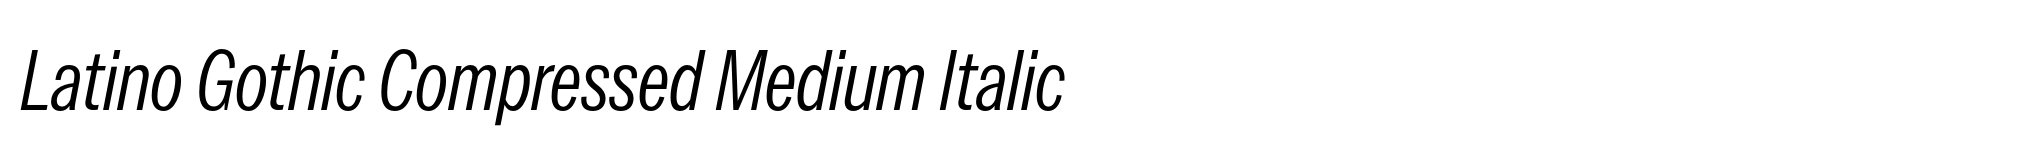 Latino Gothic Compressed Medium Italic image